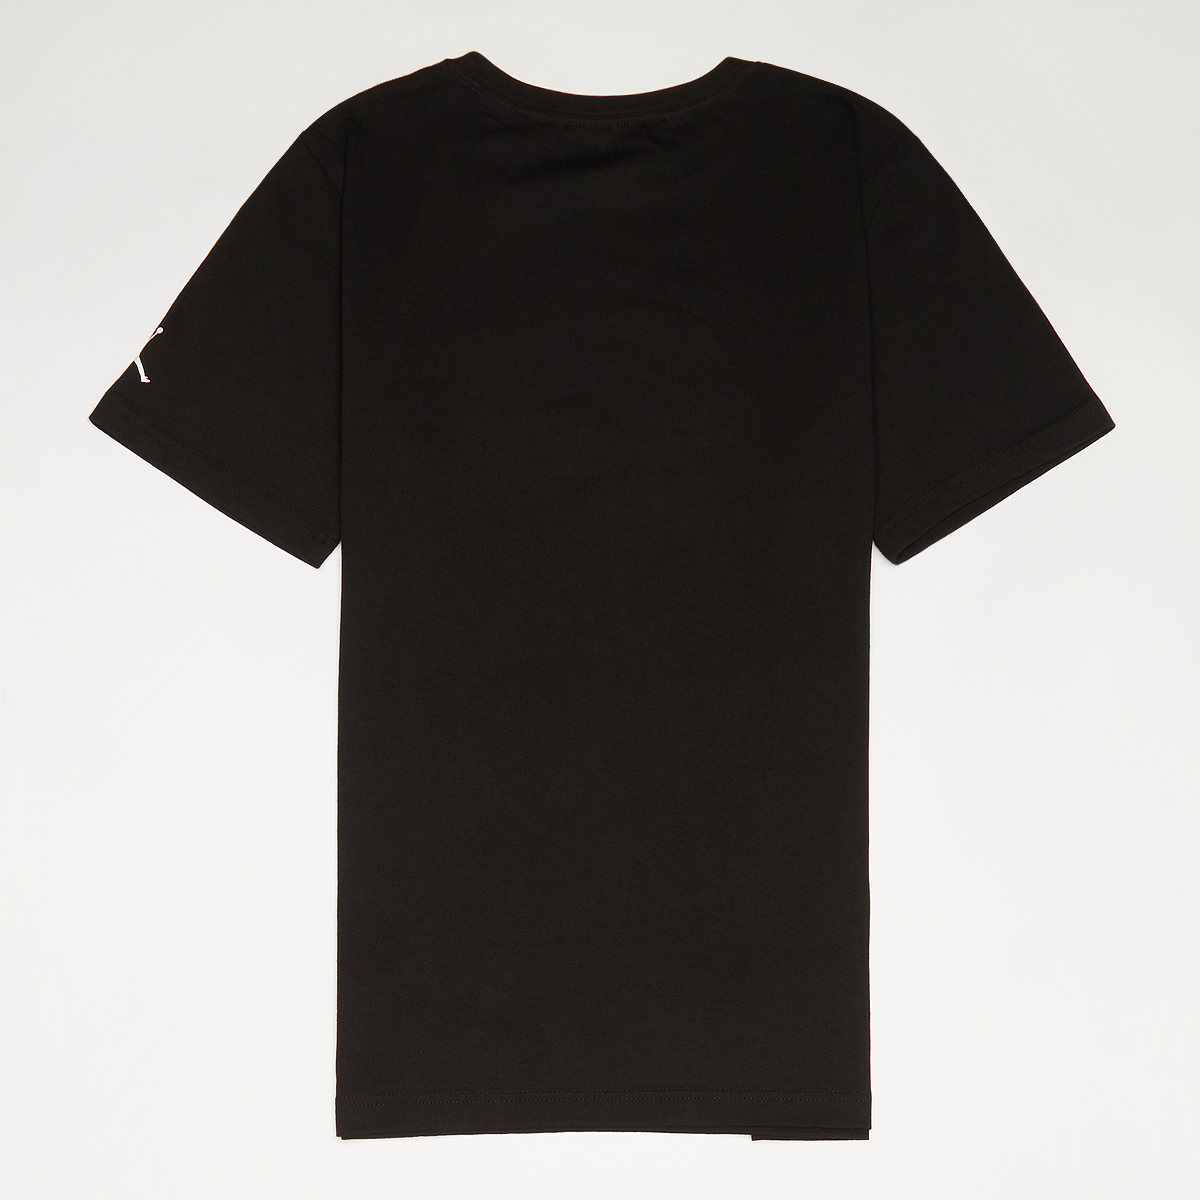 Jordan 23 Gold Line S s Tee T-shirts Kids Black maat: 170 beschikbare maaten:170